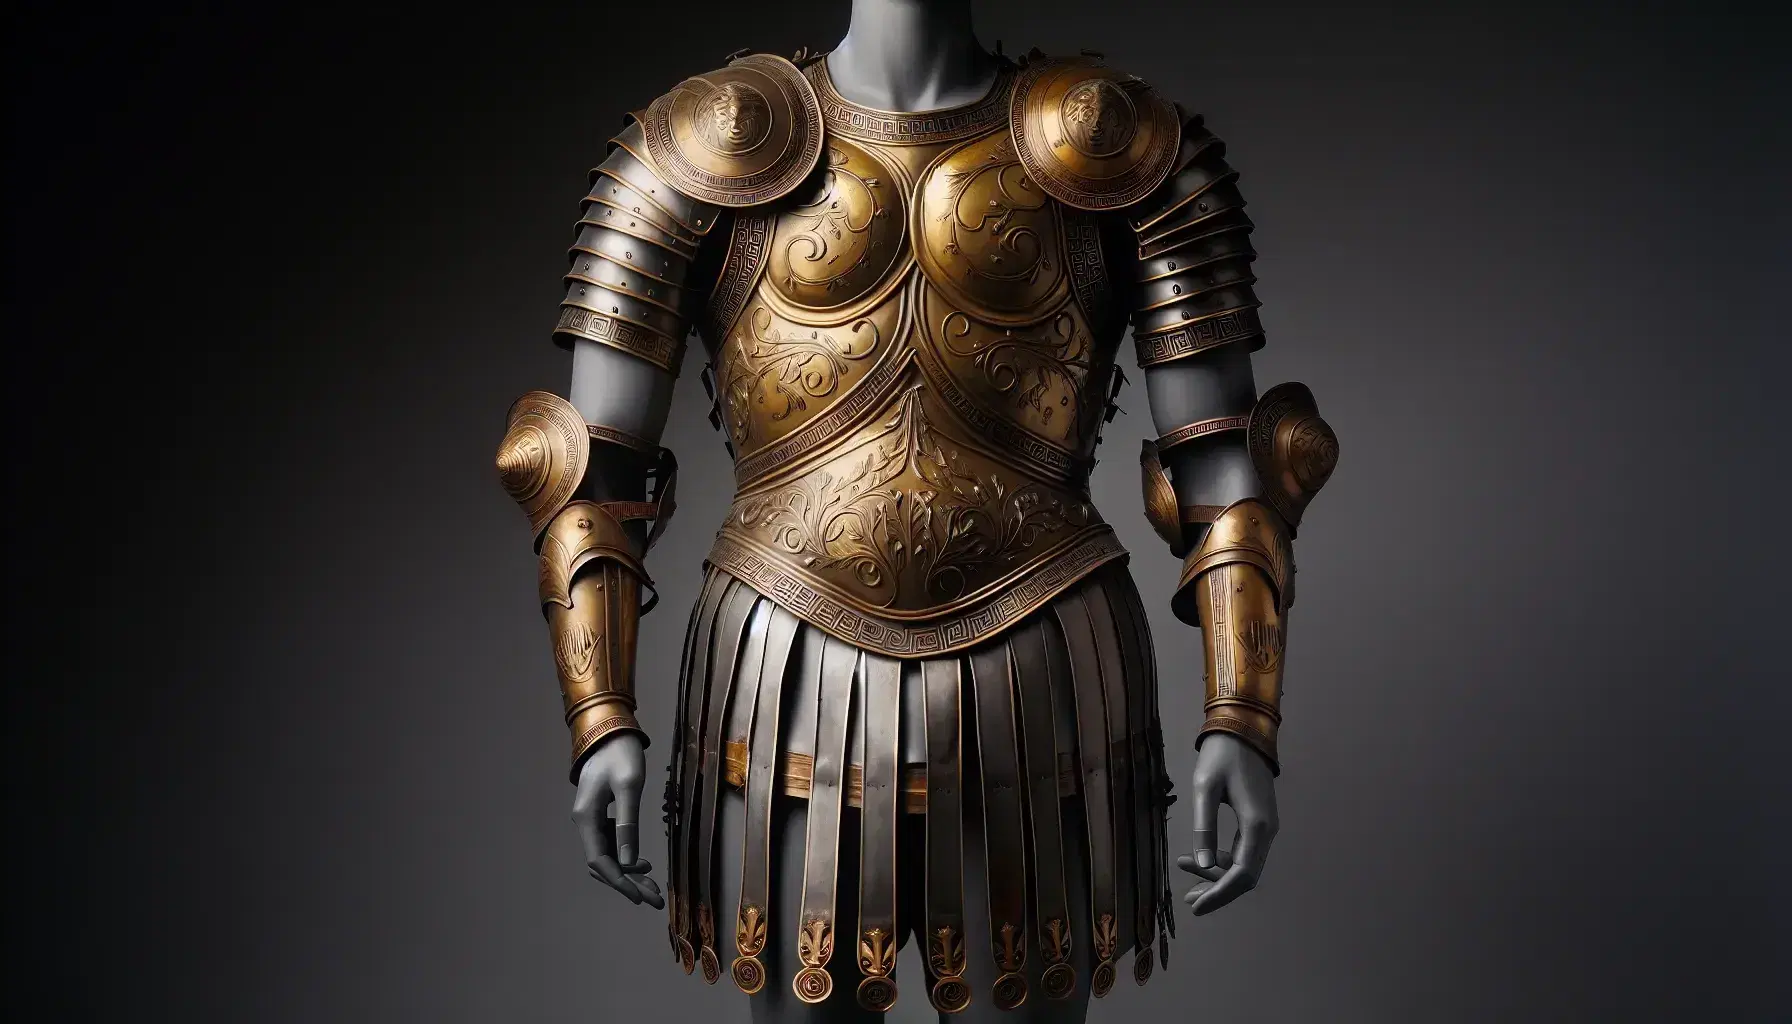 Manichino con armatura greca omerica in bronzo, elmo con cresta e maschera facciale, scudo rotondo decorato e gambali anatomici.